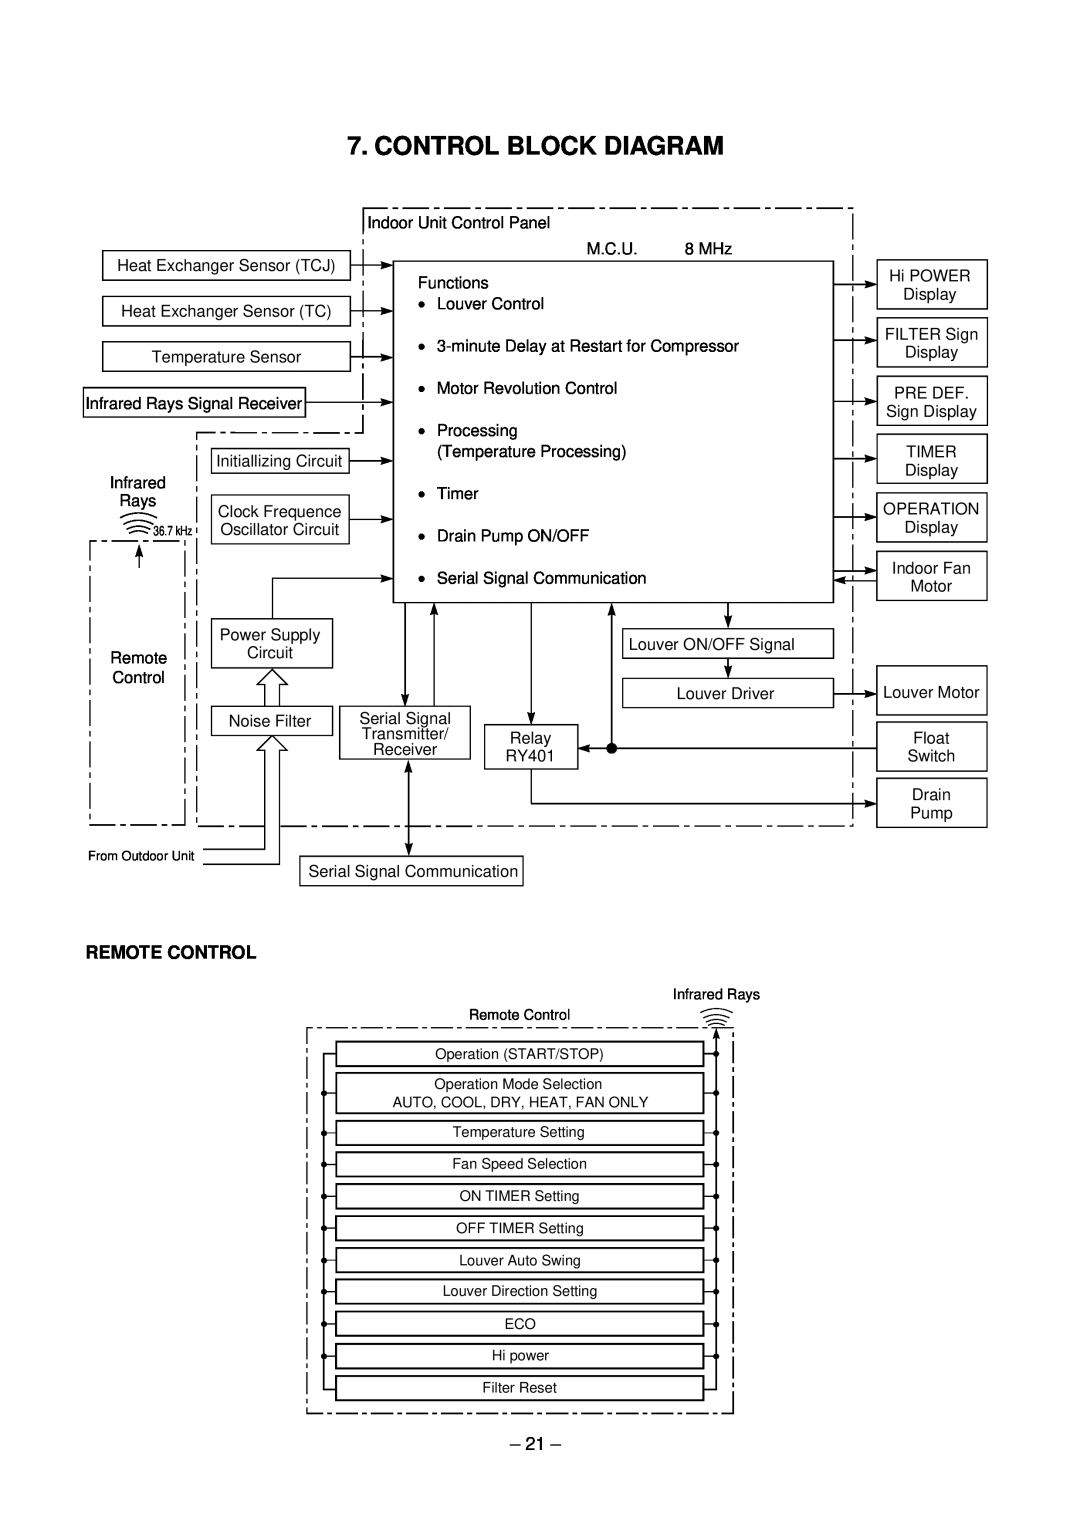 Toshiba RAV-SM560XT-E, RAV-SM800XT-E service manual Control Block Diagram, Remote Control 